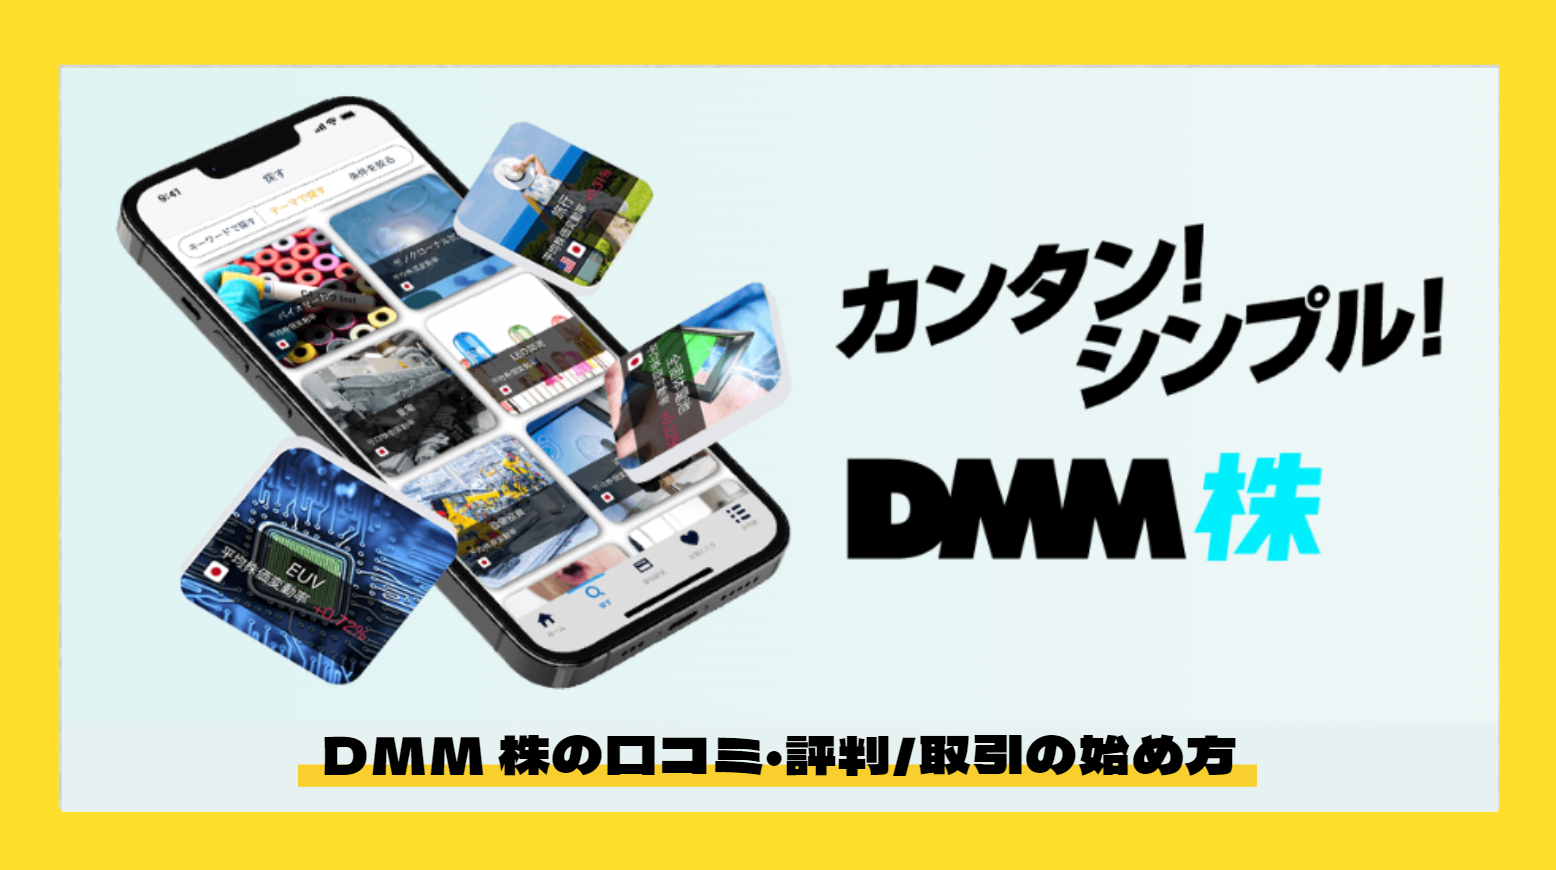 DMM株_サムネイル